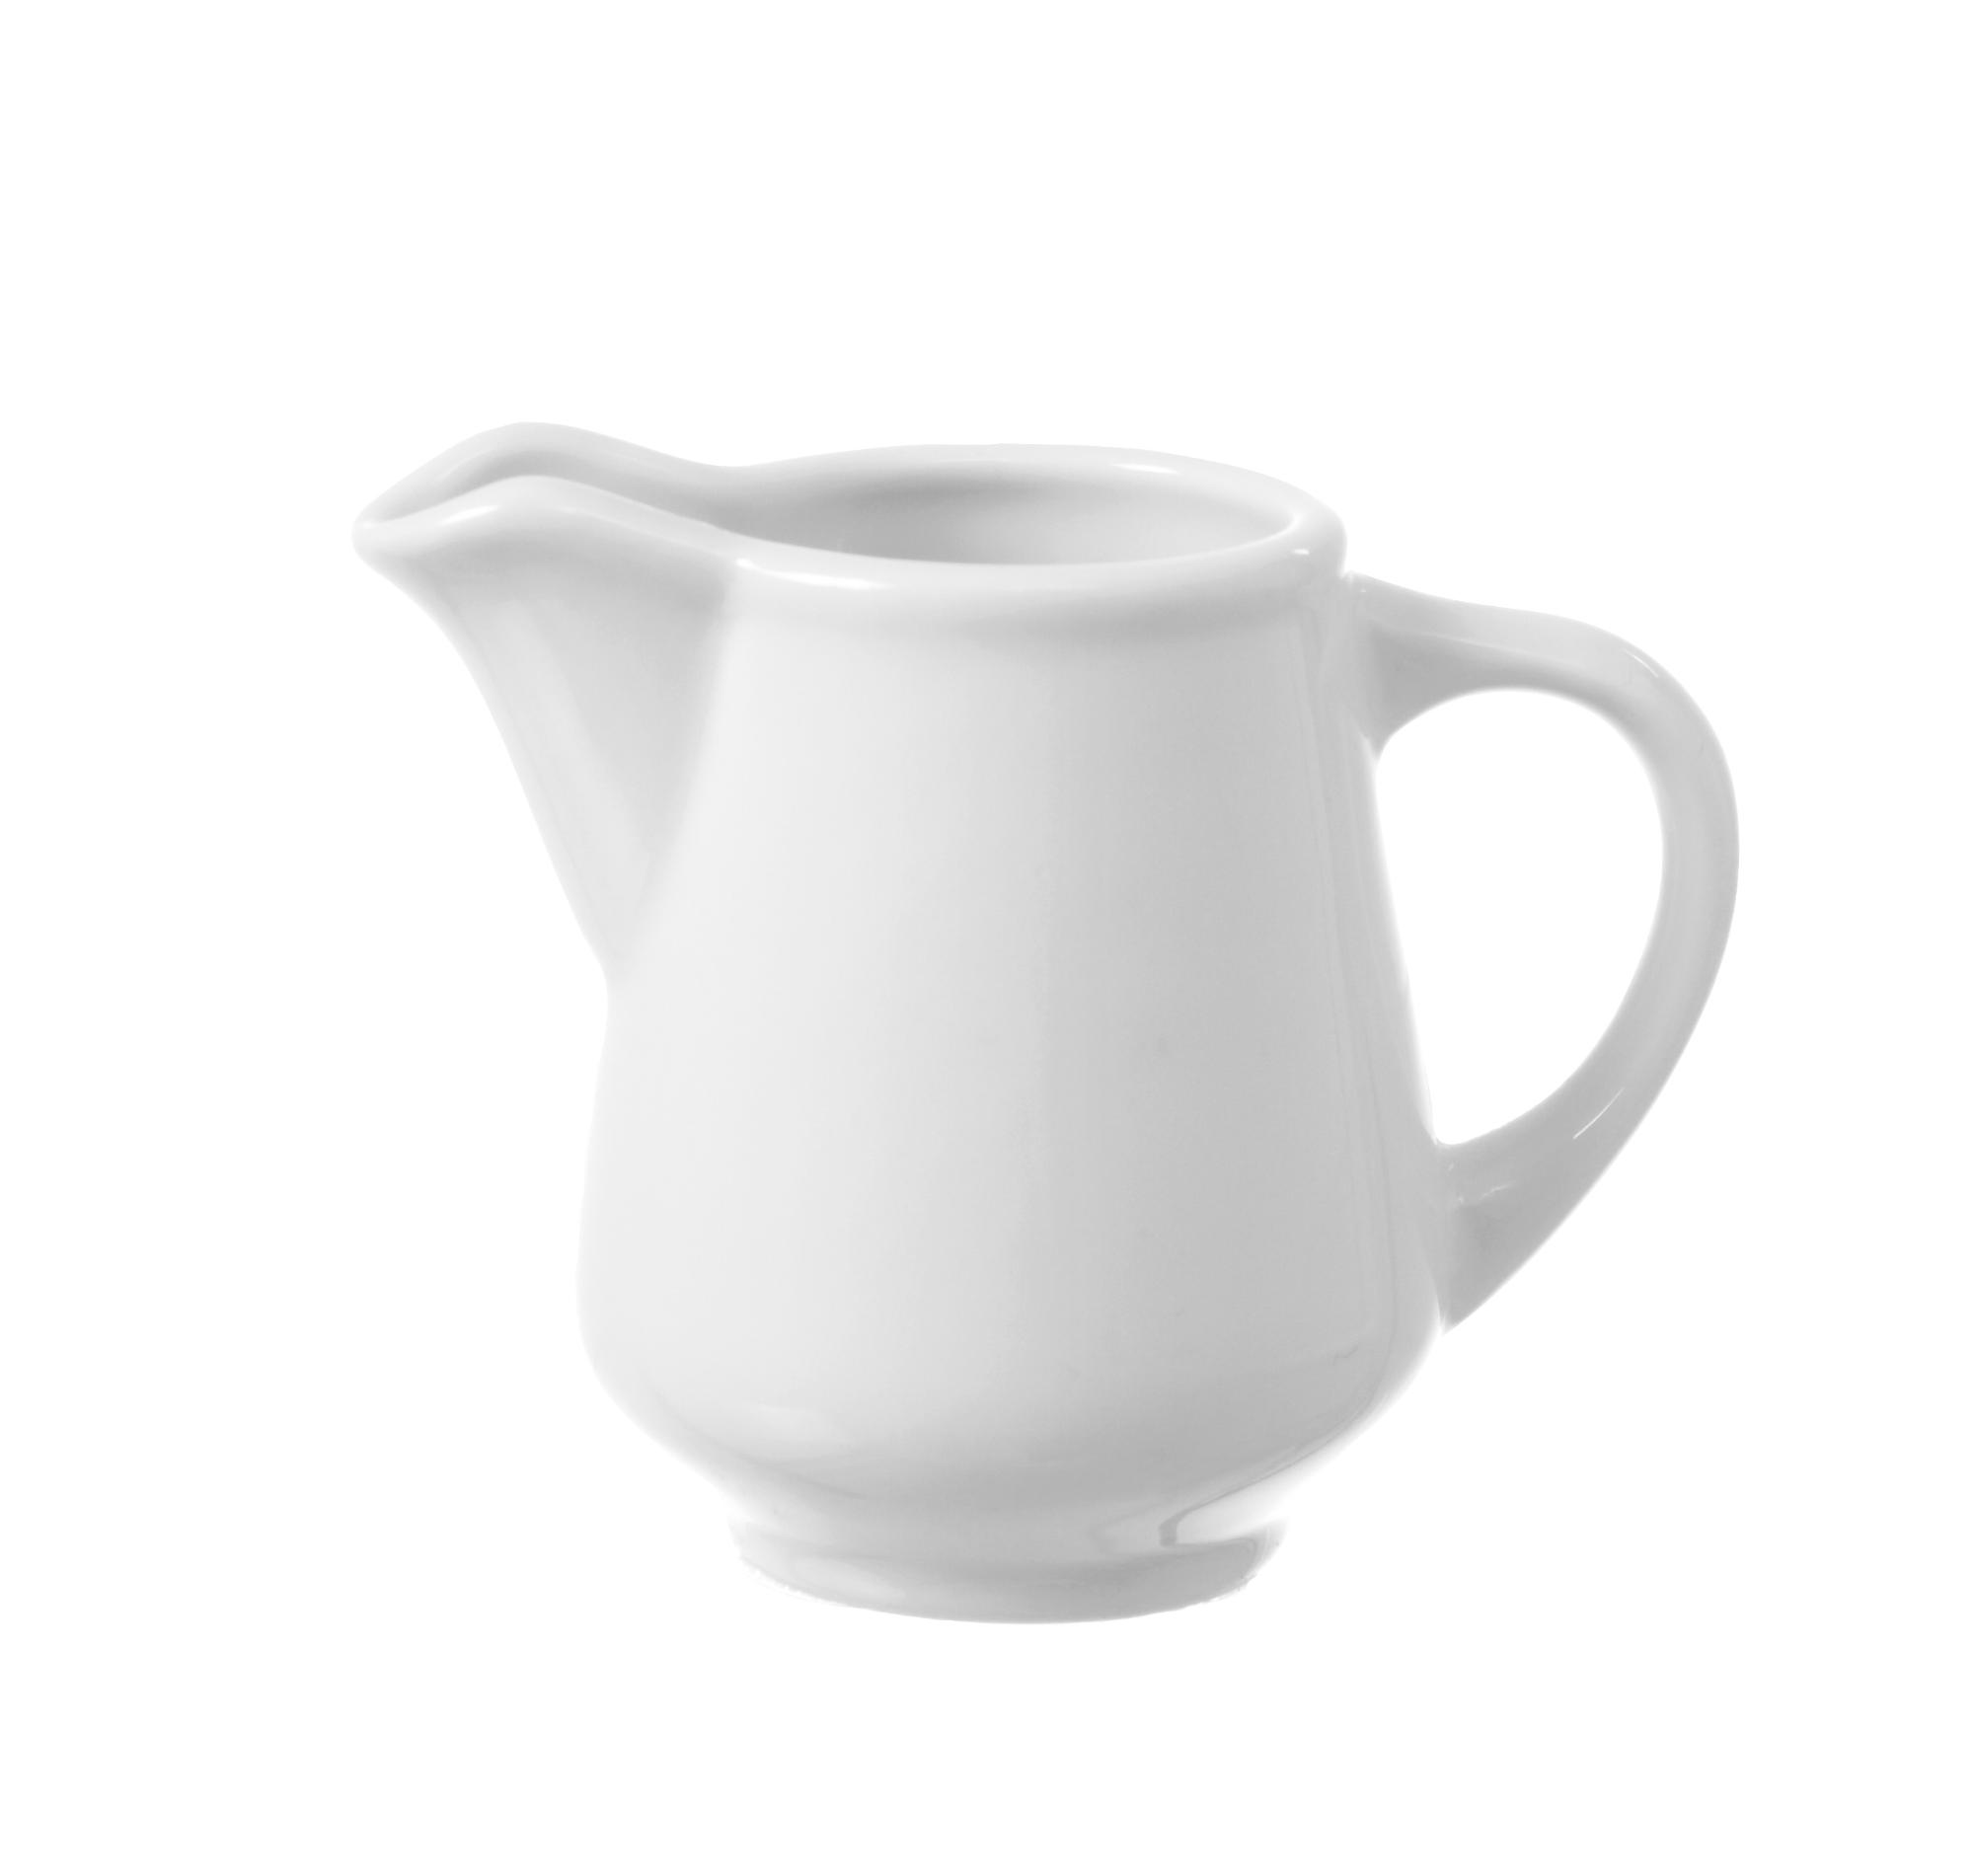 Bianco milk jug, 100ml